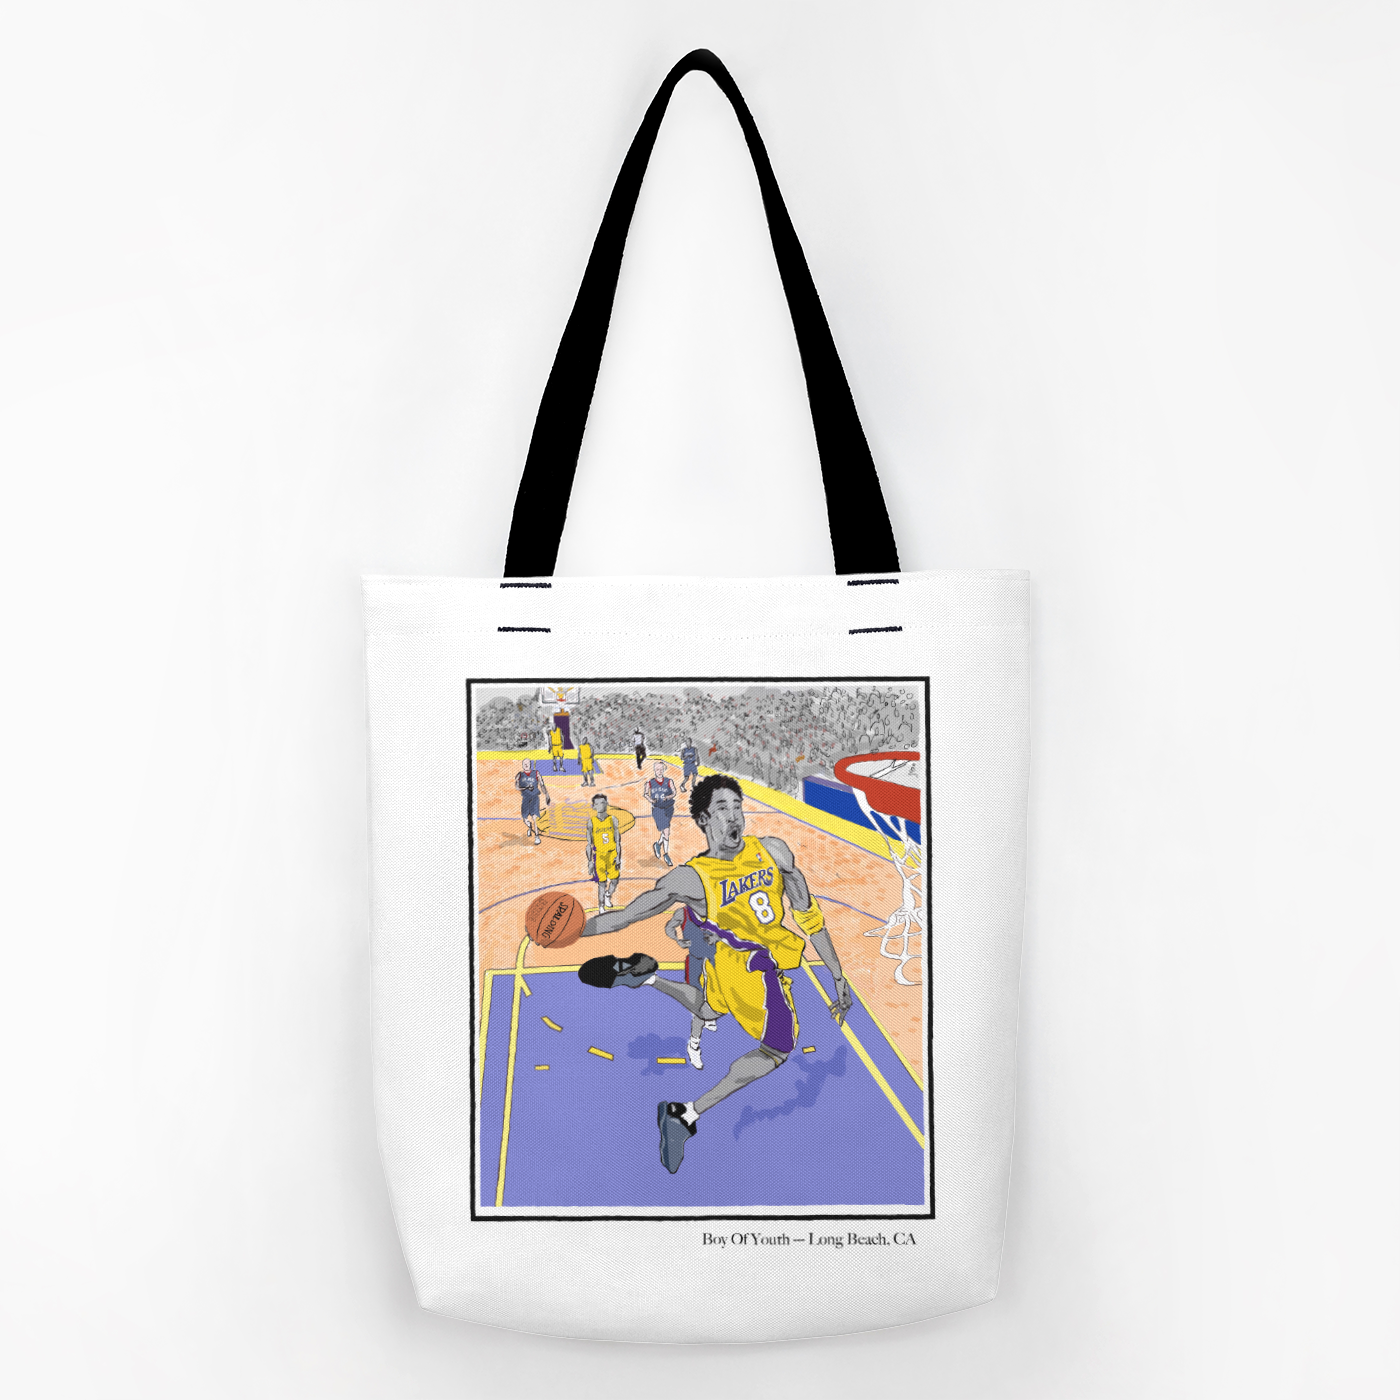 Kobe "Bean" Bryant Tote Bag